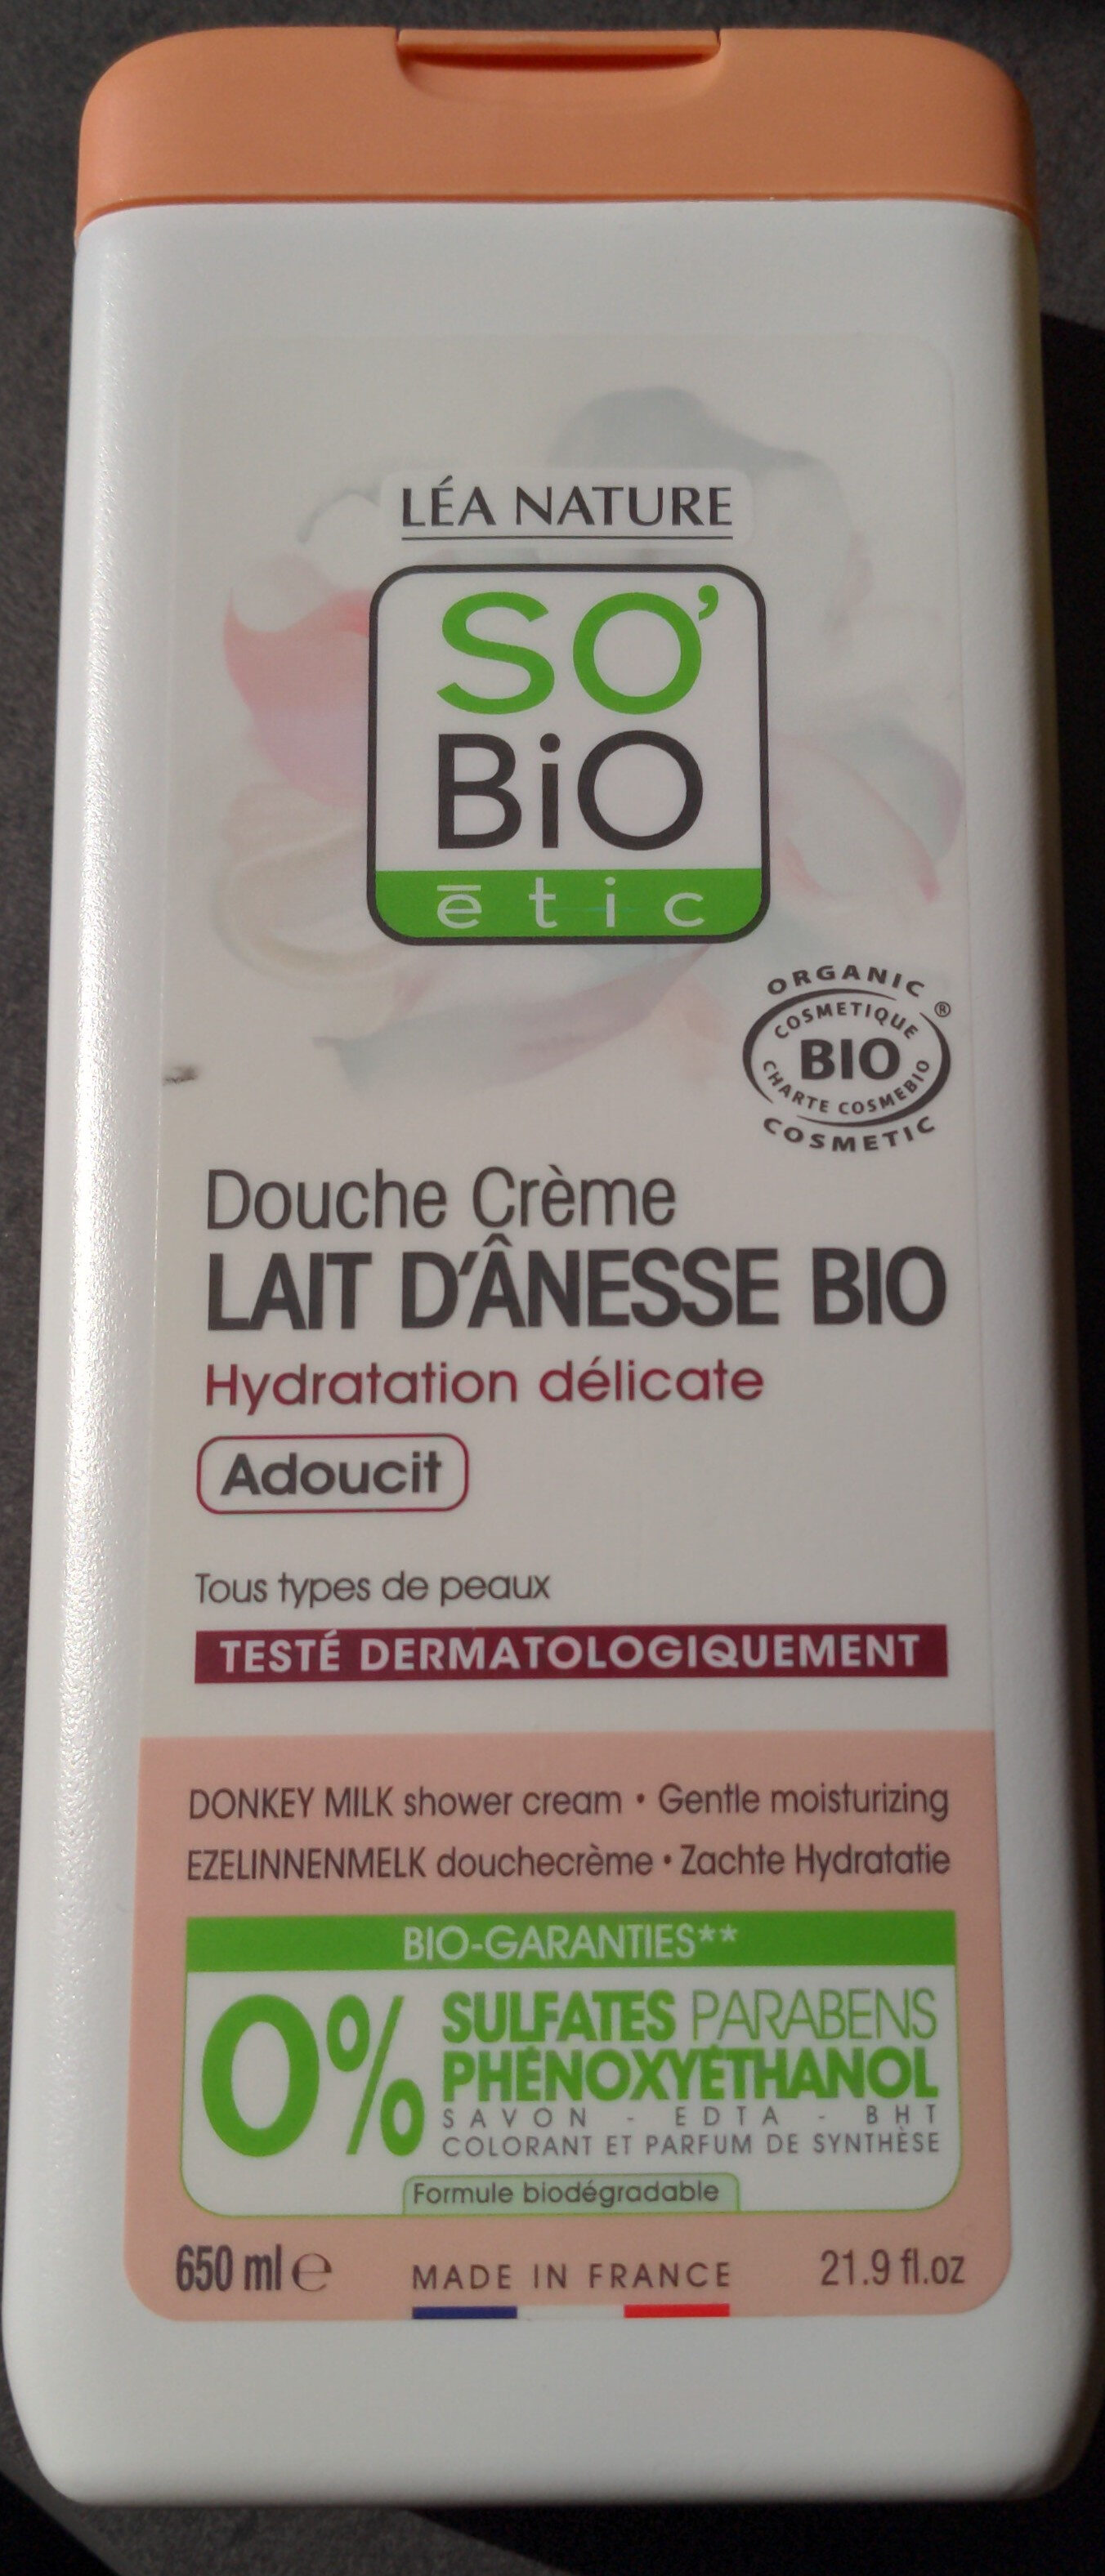 Douche crème lait d'ânesse - Product - fr